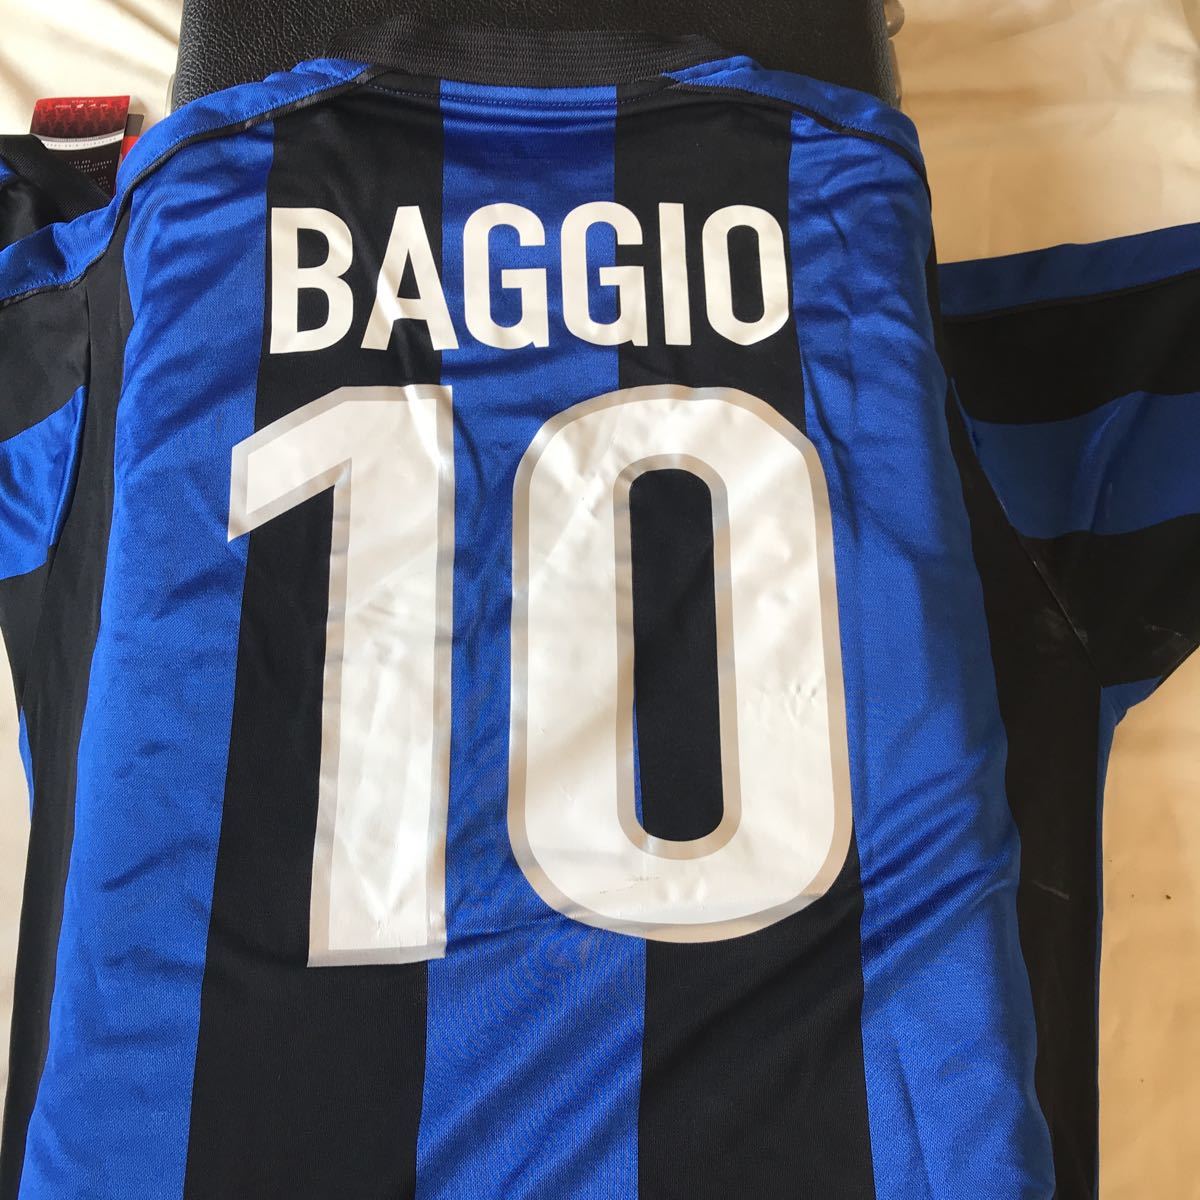 Roberto Baggio ロベルト・バッジョ 背番号10 Tシャツ 通販